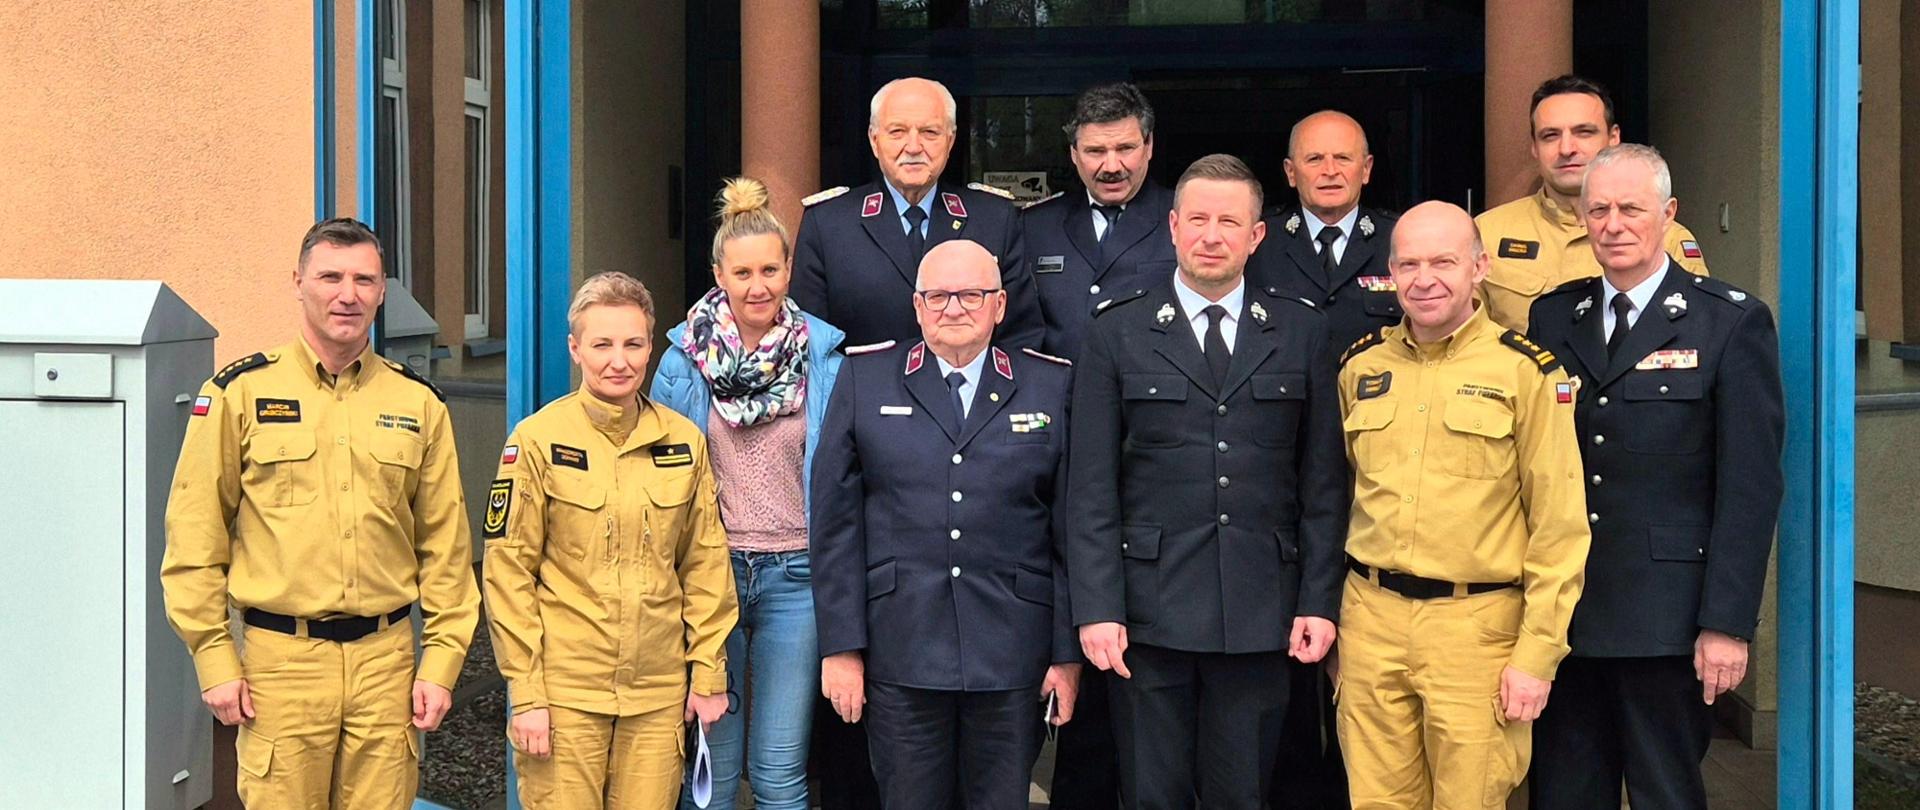 Zdjęcie grupowe polskich i niemieckich strażaków ubranych w mundury. W tle zarys budynku